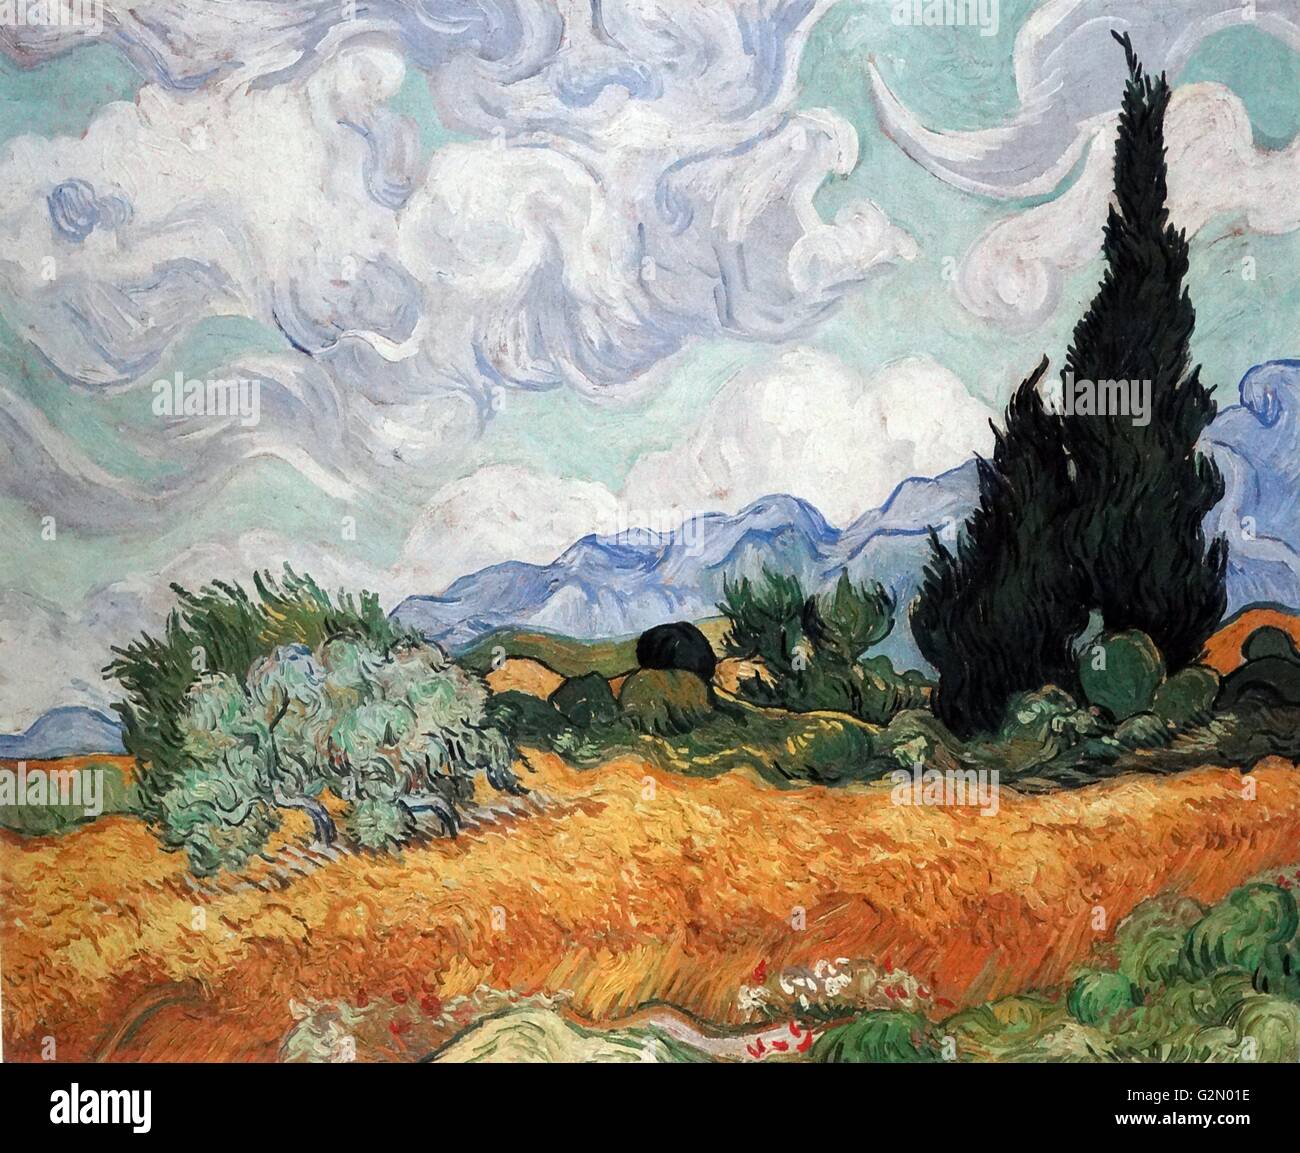 Dipinto dal famoso artista olandese Vincent Van Gogh (30 marzo 1853 - 29 luglio 1890), opera intitolata 'Campo di grano con cipressi'. Completata nel 1889. Foto Stock